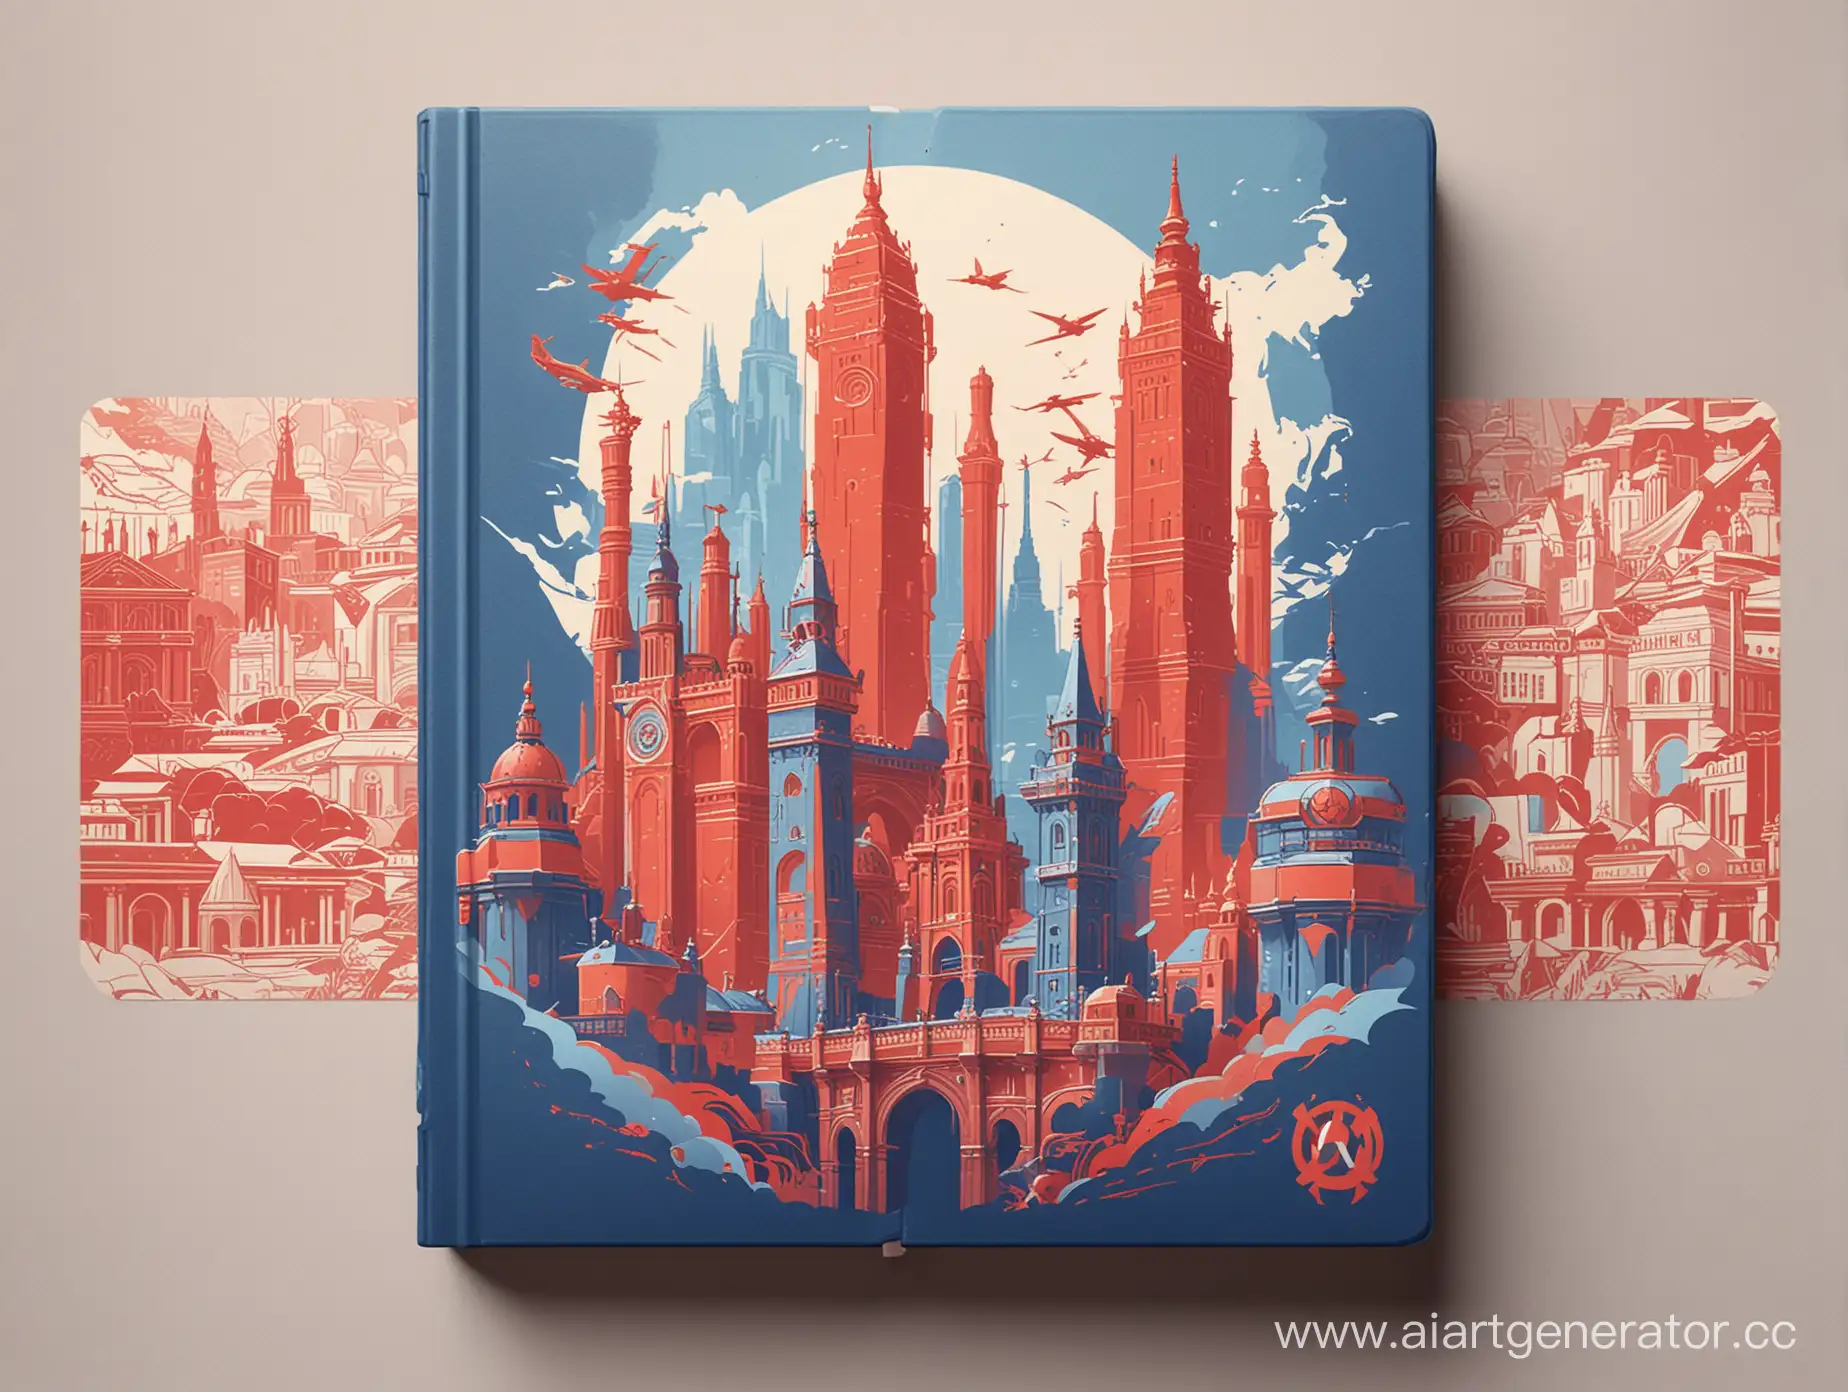 Обложка для книги про путешествия в синем и красном цветах в стиле  Overwatch 2 с достопримечательностями мира